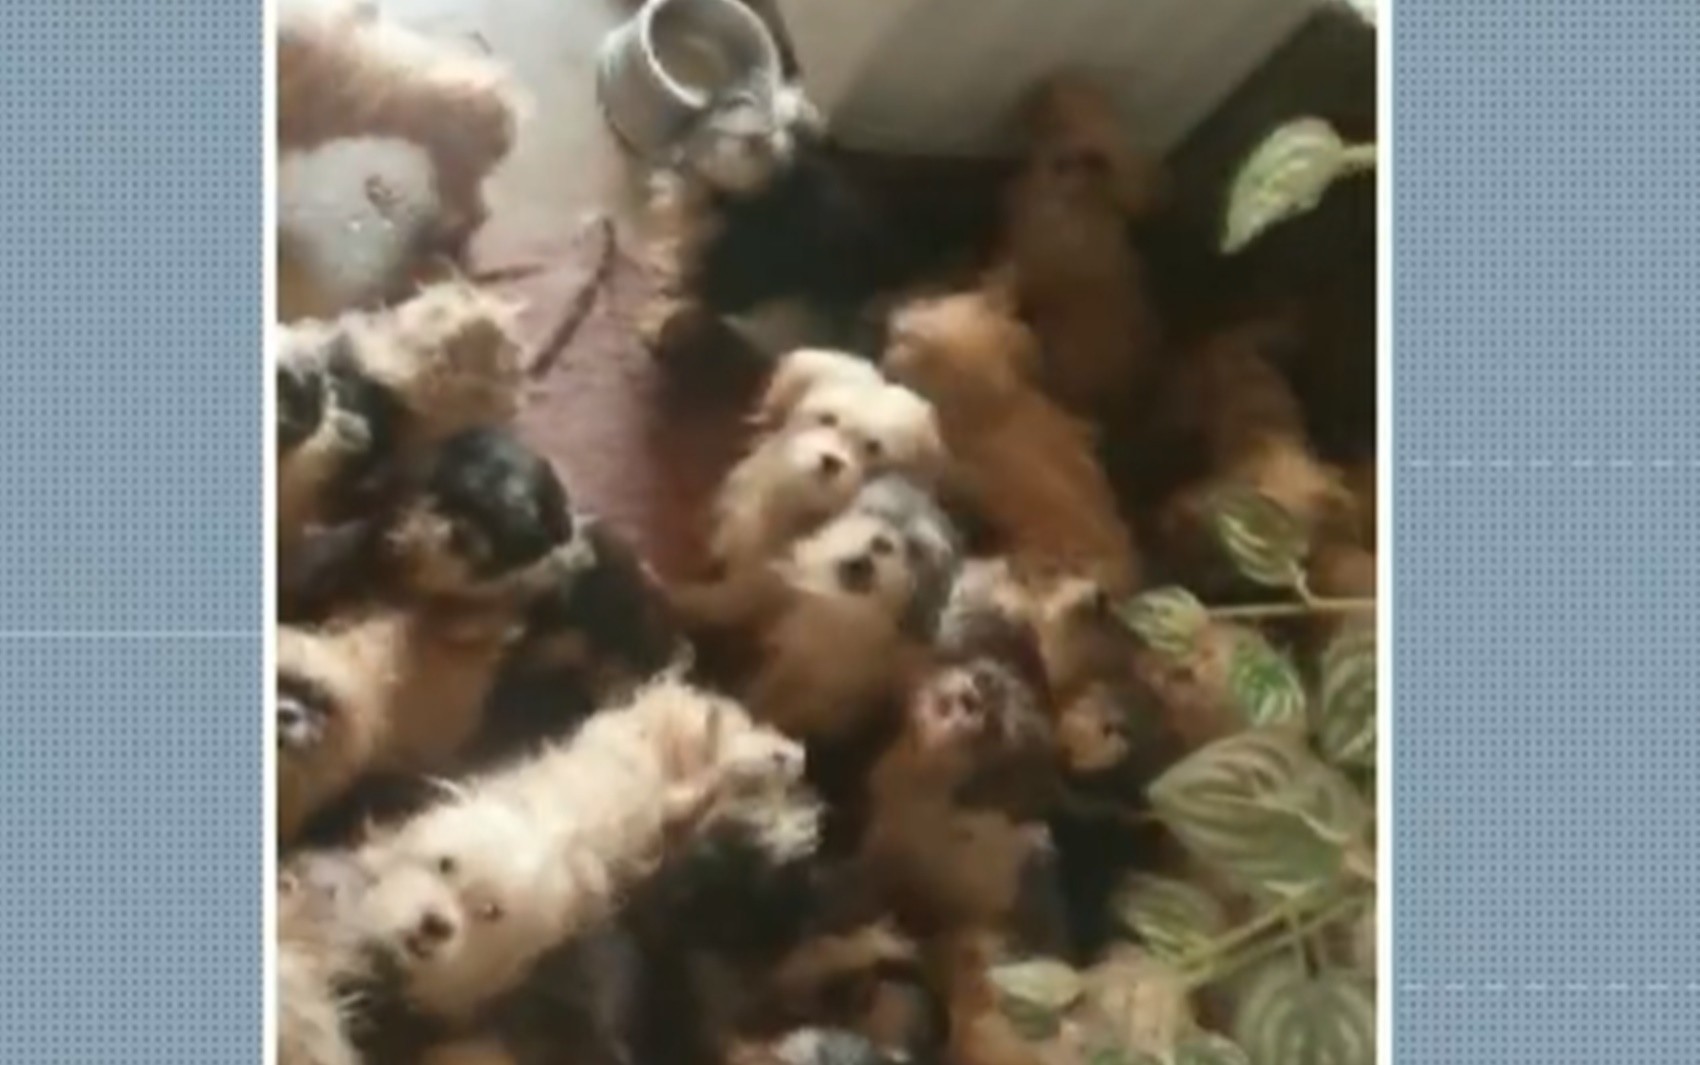 Polícia Civil resgata 41 cães em situação de maus-tratos em casa, no Centro de Poços de Caldas, MG